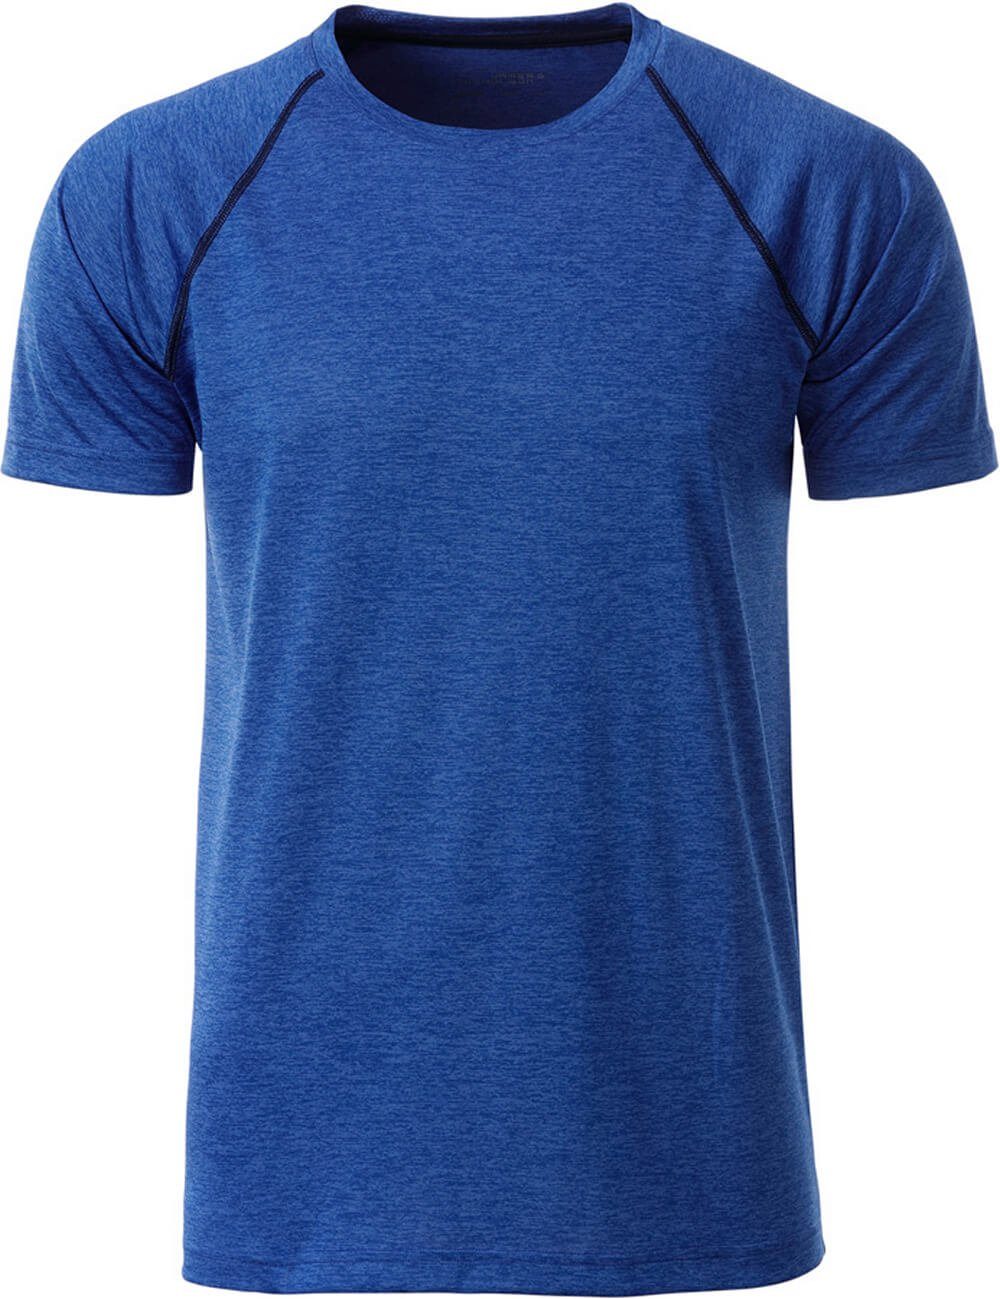 James & Nicholson Funktionsshirt James & Nicholson JN 496 Herren Funktions-Shirt schnell trocknend blue Melange/navy